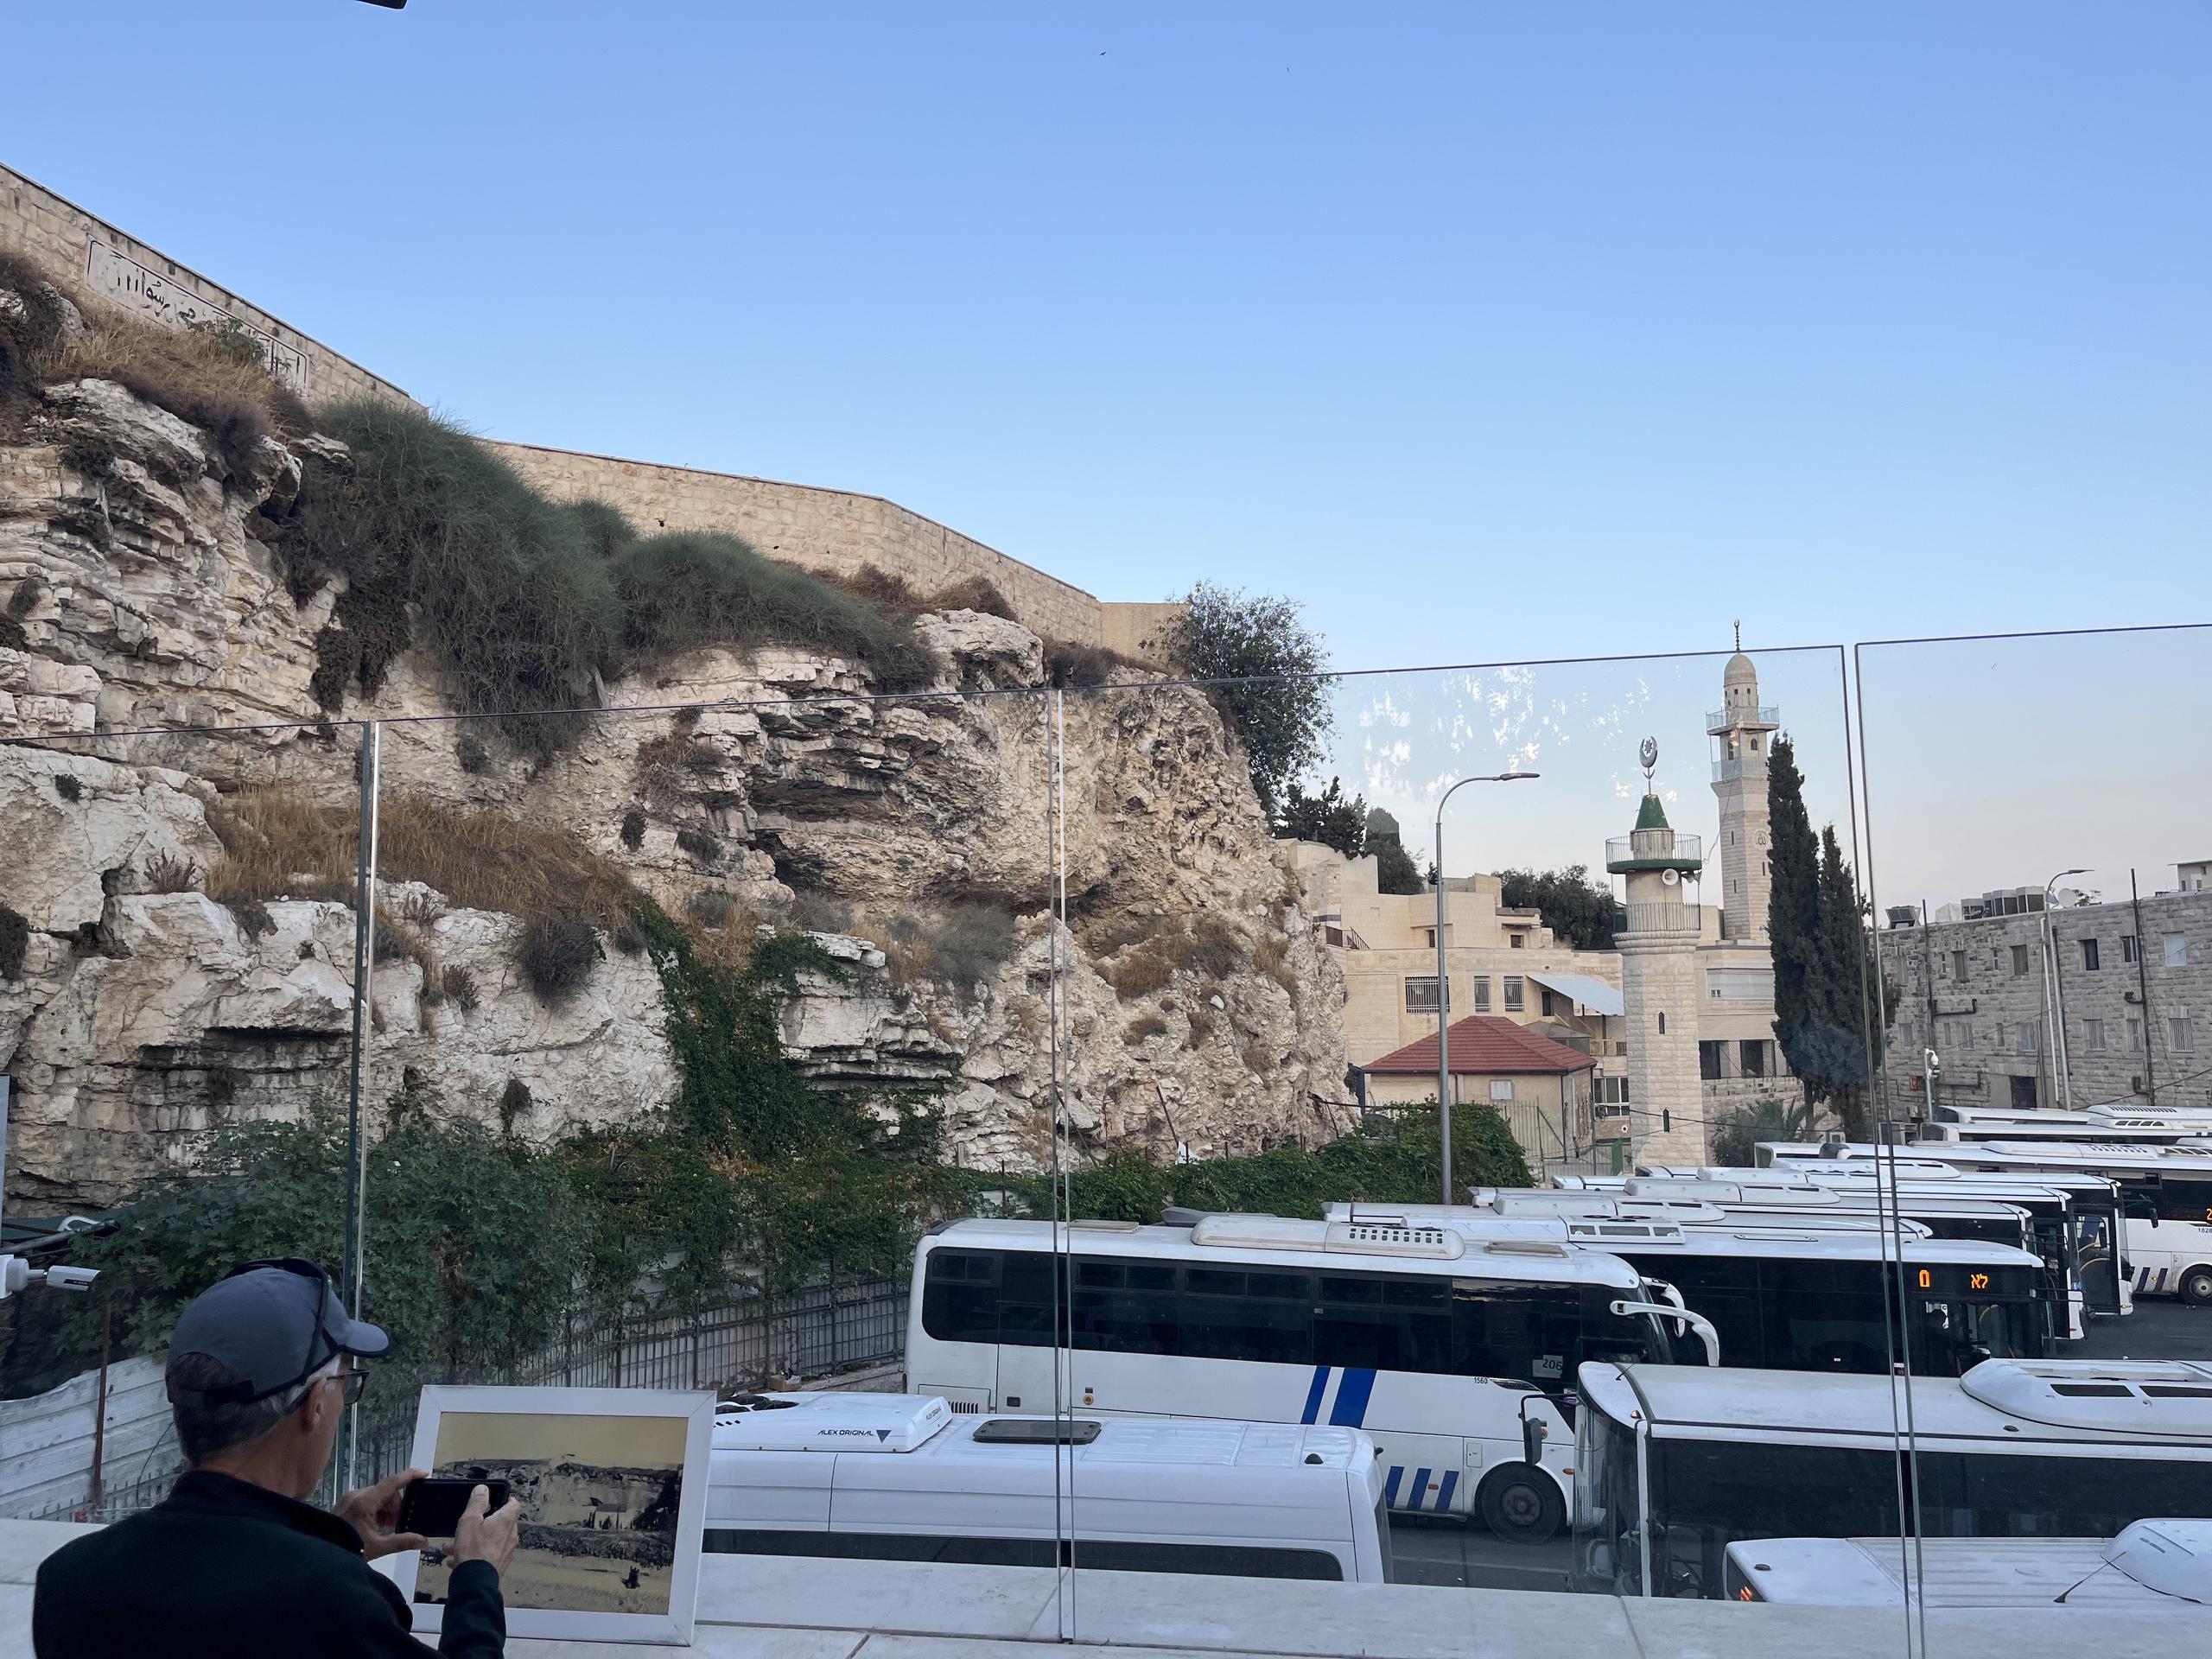 Lugar en Jerusalén donde se cree que era el Gólgota en los tiempos de Jesús. Mirándose desde un ángulo en particular, esta ladera rocosa parece ser una calavera, por eso se deriva la palabra calvario.